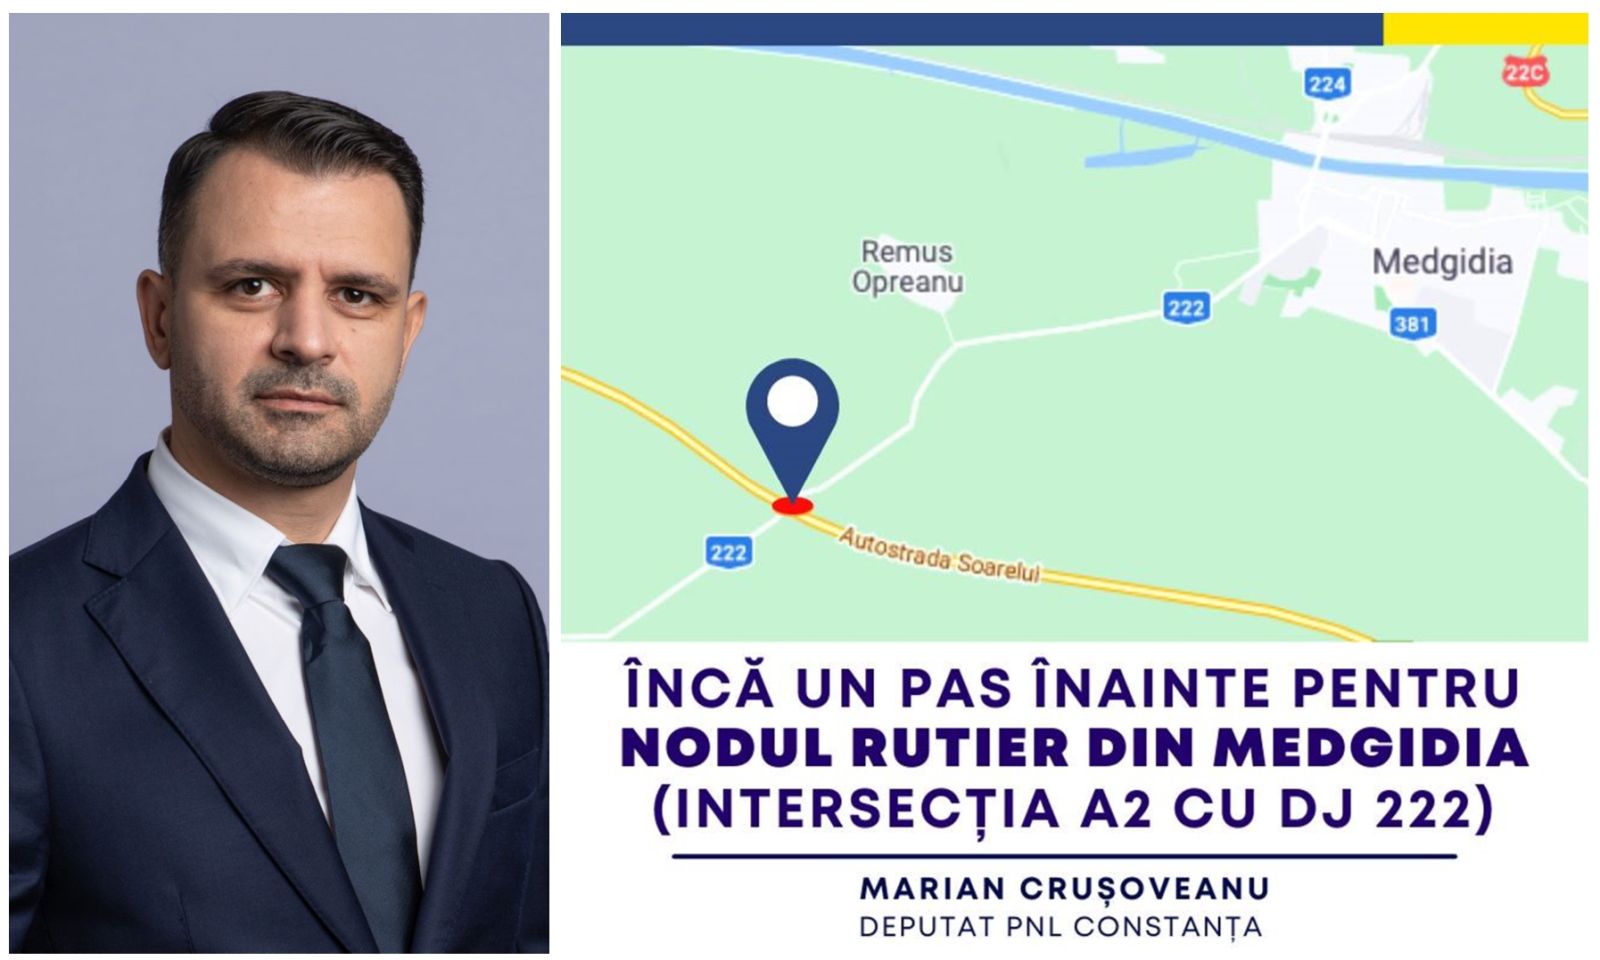 Nod rutier în Medgidia. Marian Crușoveanu, PNL: S-au depus patru oferte pentru studiul de fezabilitate